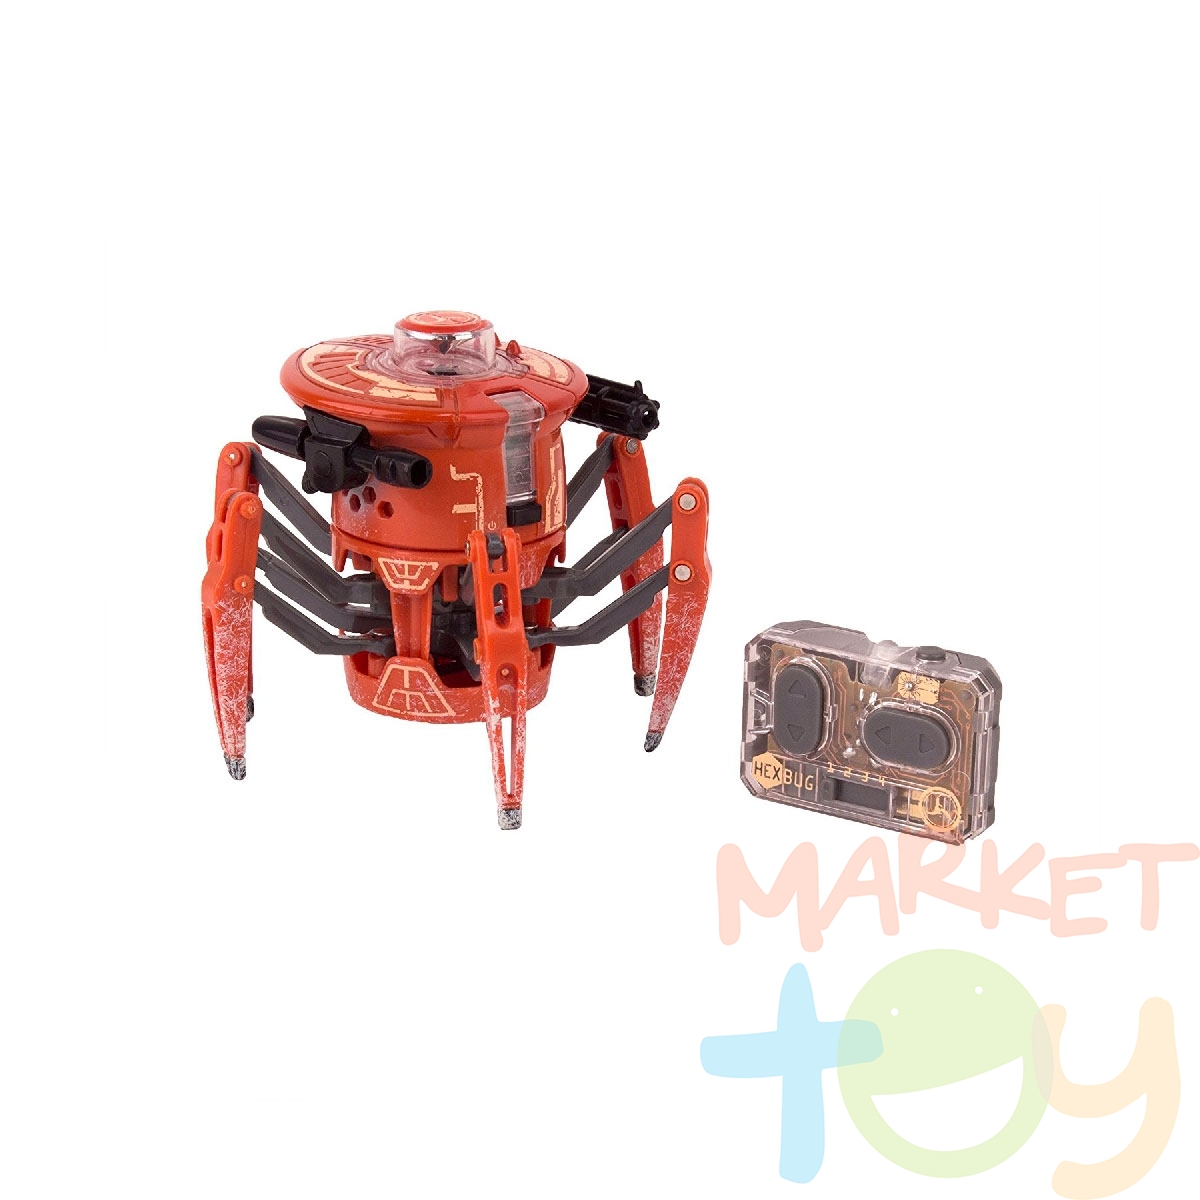 Камера спайдер 2.0. Робот Hexbug набор Battle Spider 2. Hexbug Спайдер. Hexbug - микроробот паук. Микроробот Спайдер.